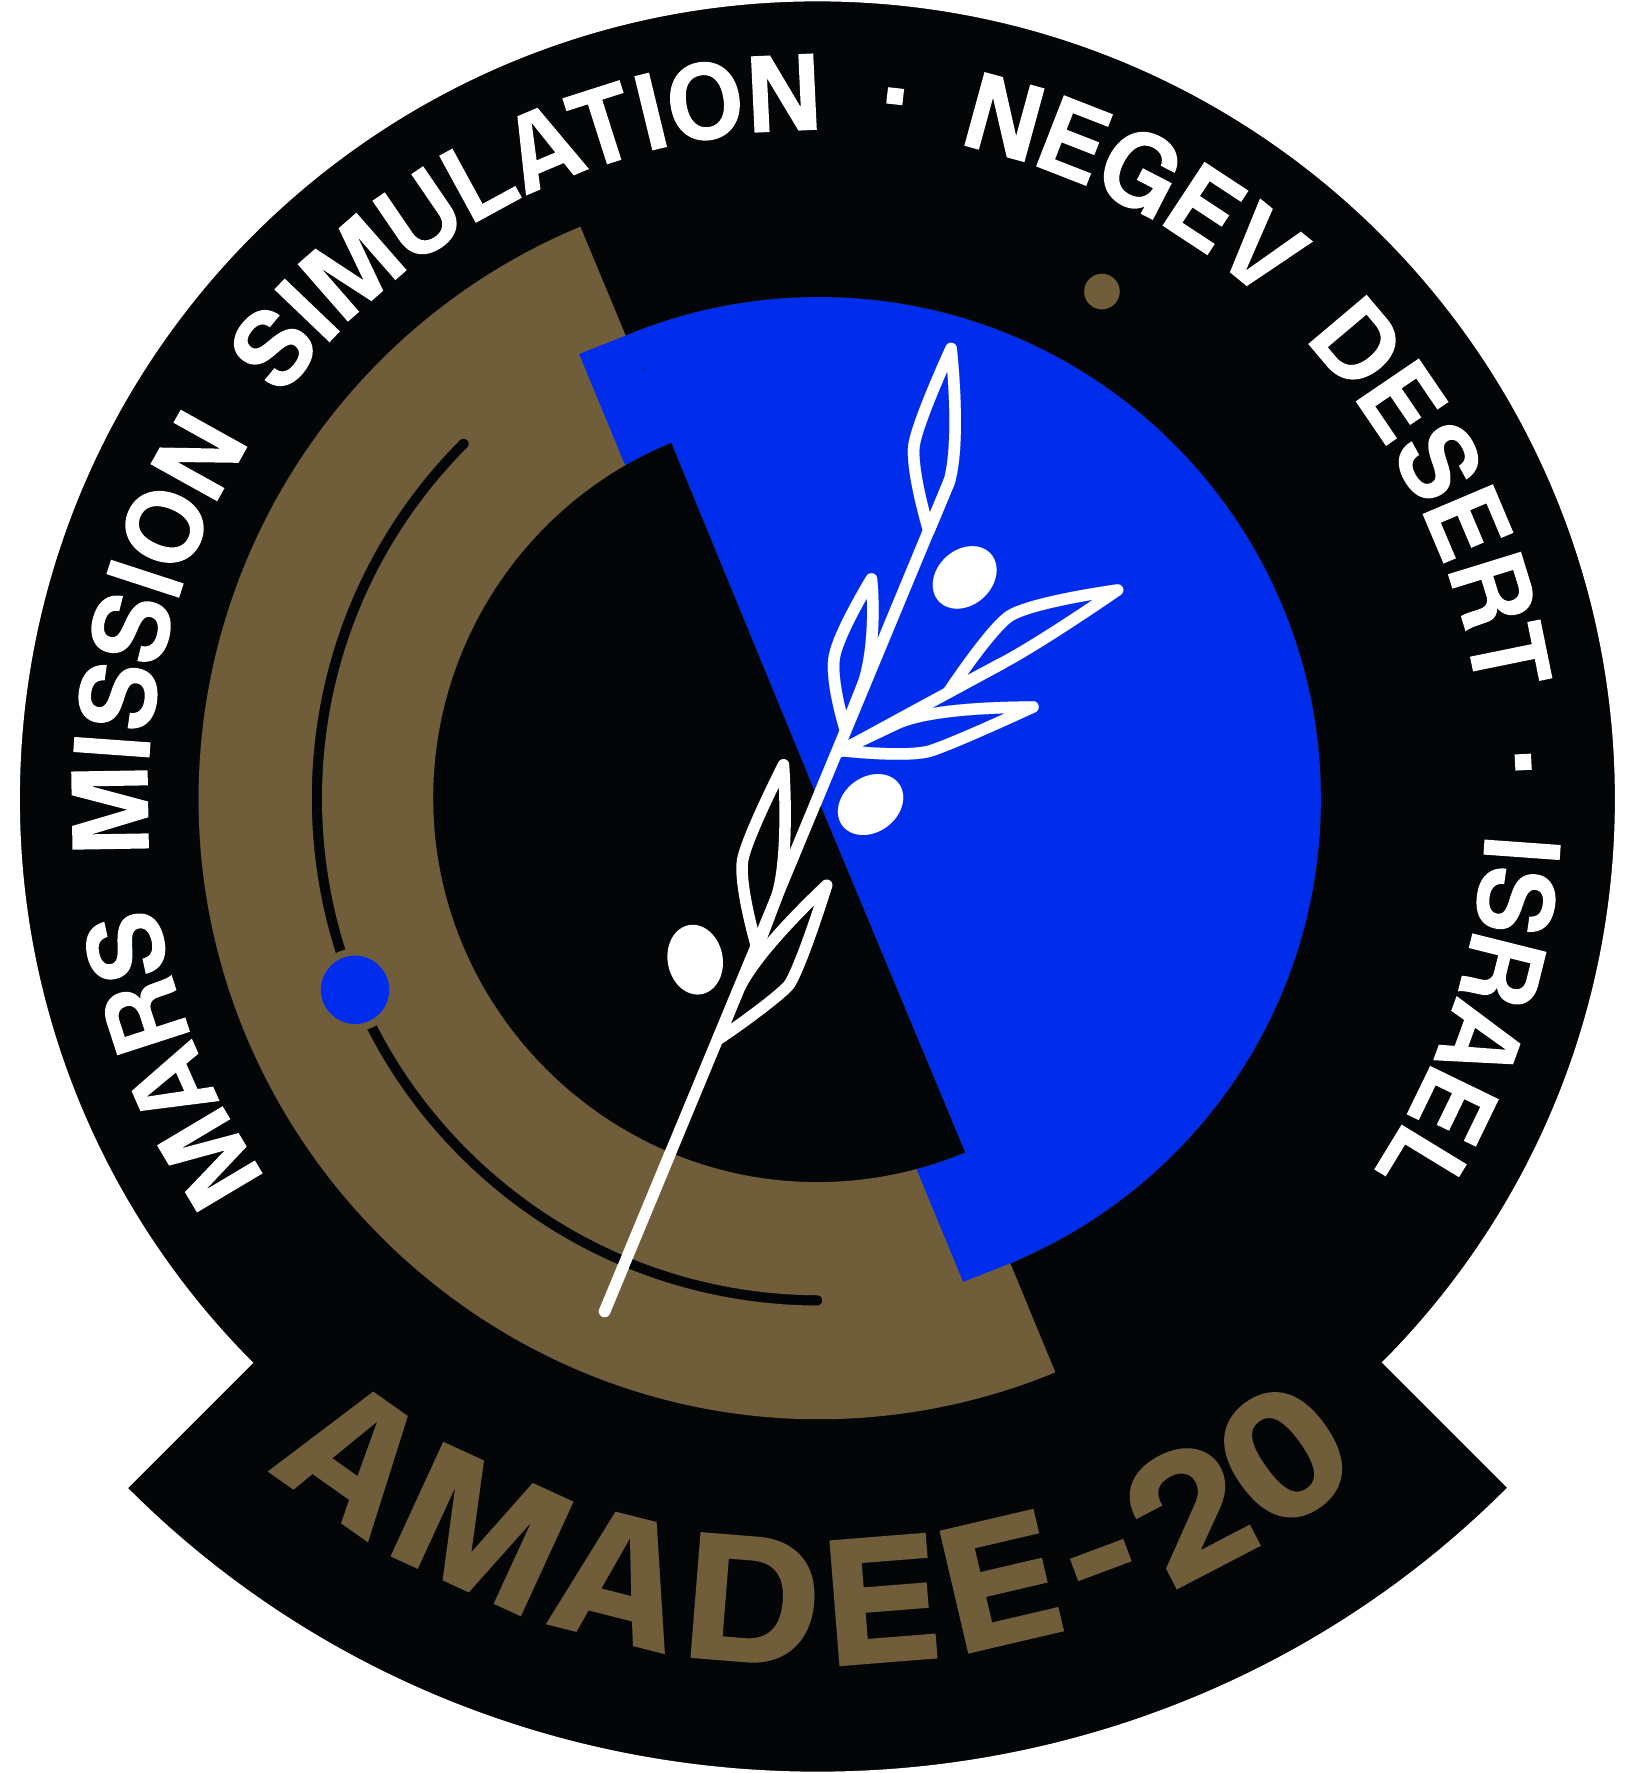 AMADEE-20 Mission.jpg